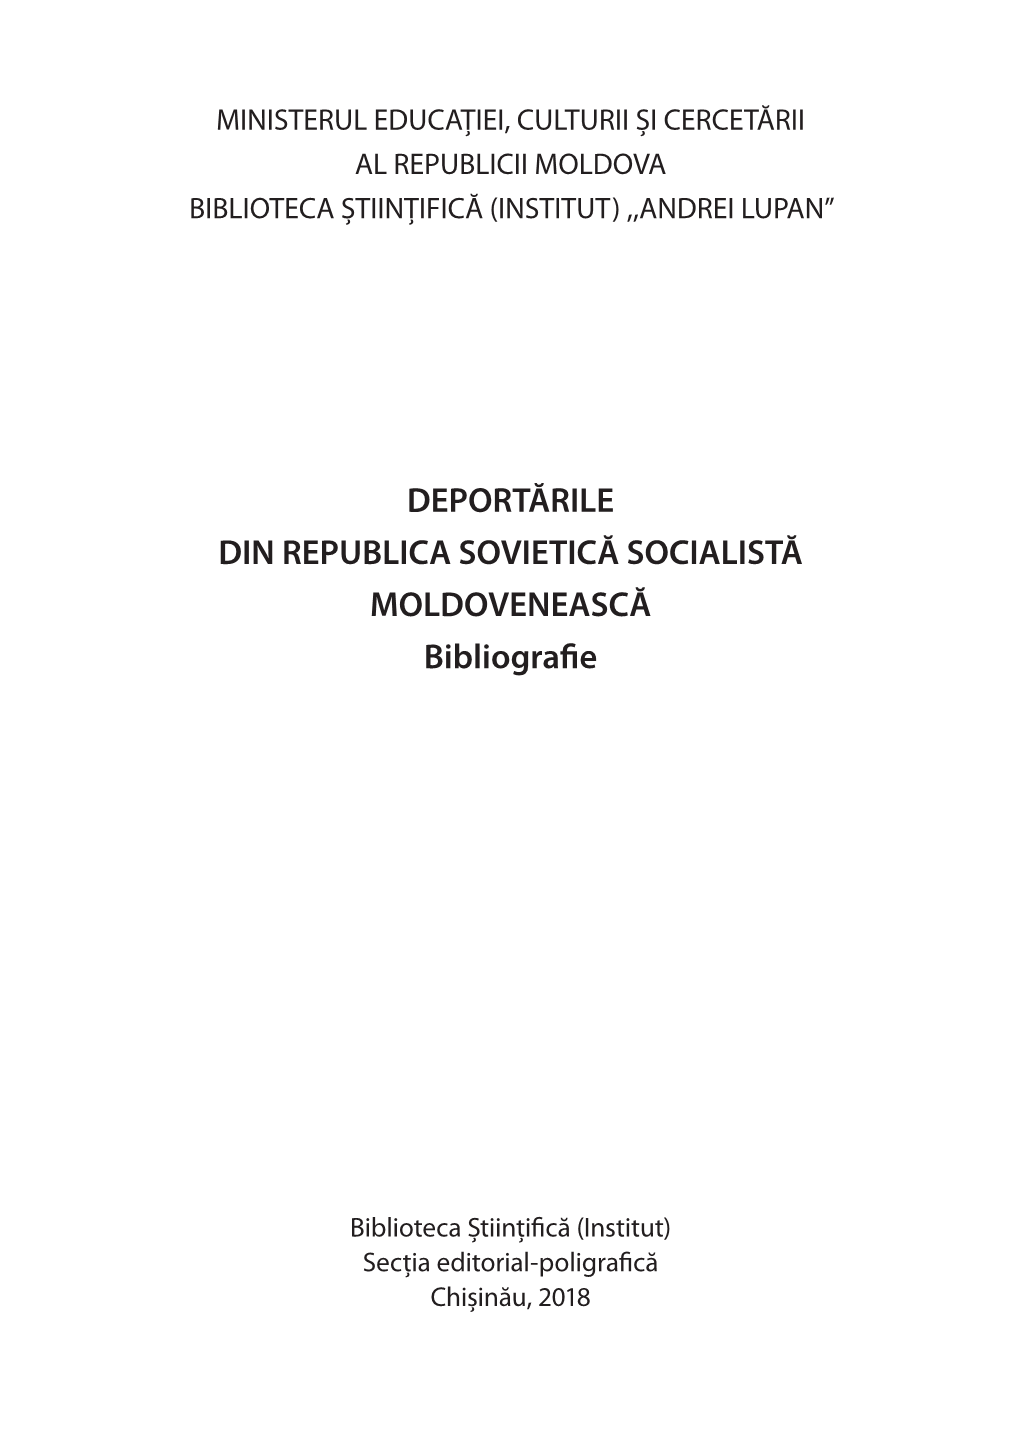 DEPORTĂRILE DIN REPUBLICA SOVIETICĂ SOCIALISTĂ MOLDOVENEASCĂ Bibliografie